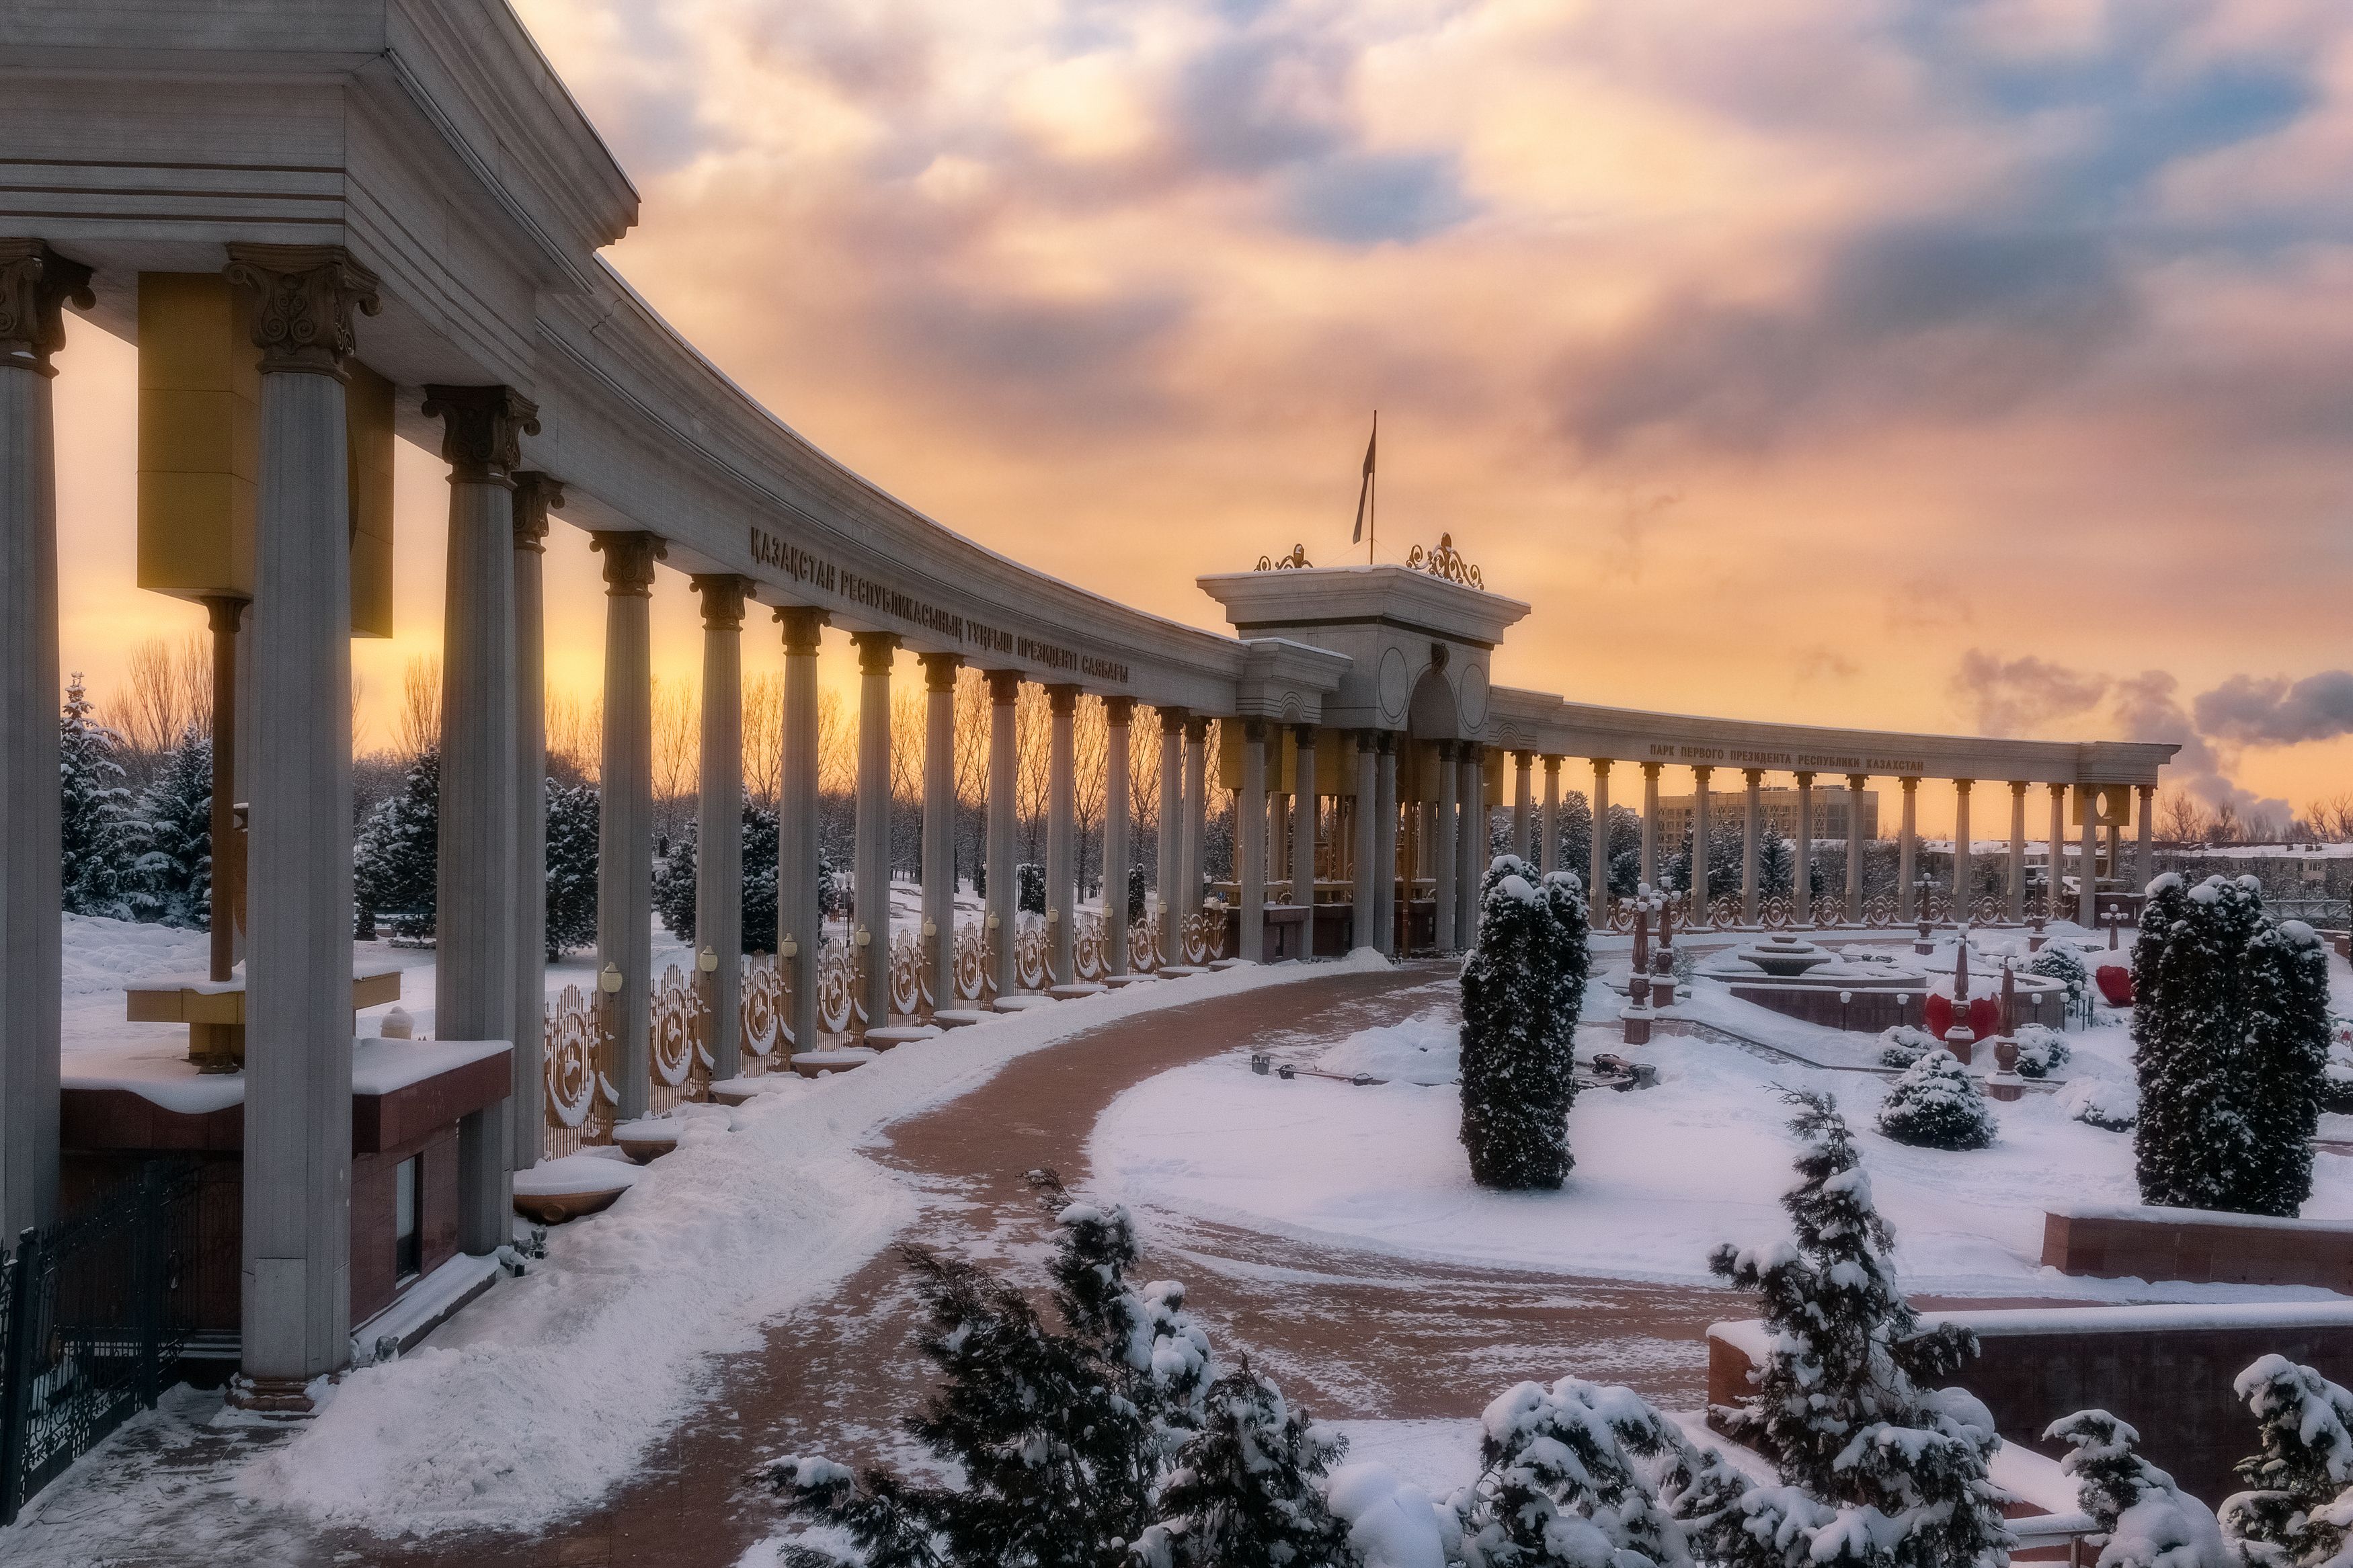 город парк архитектура вечер зима небо облака арка колоннада снег, Еремеев Дмитрий